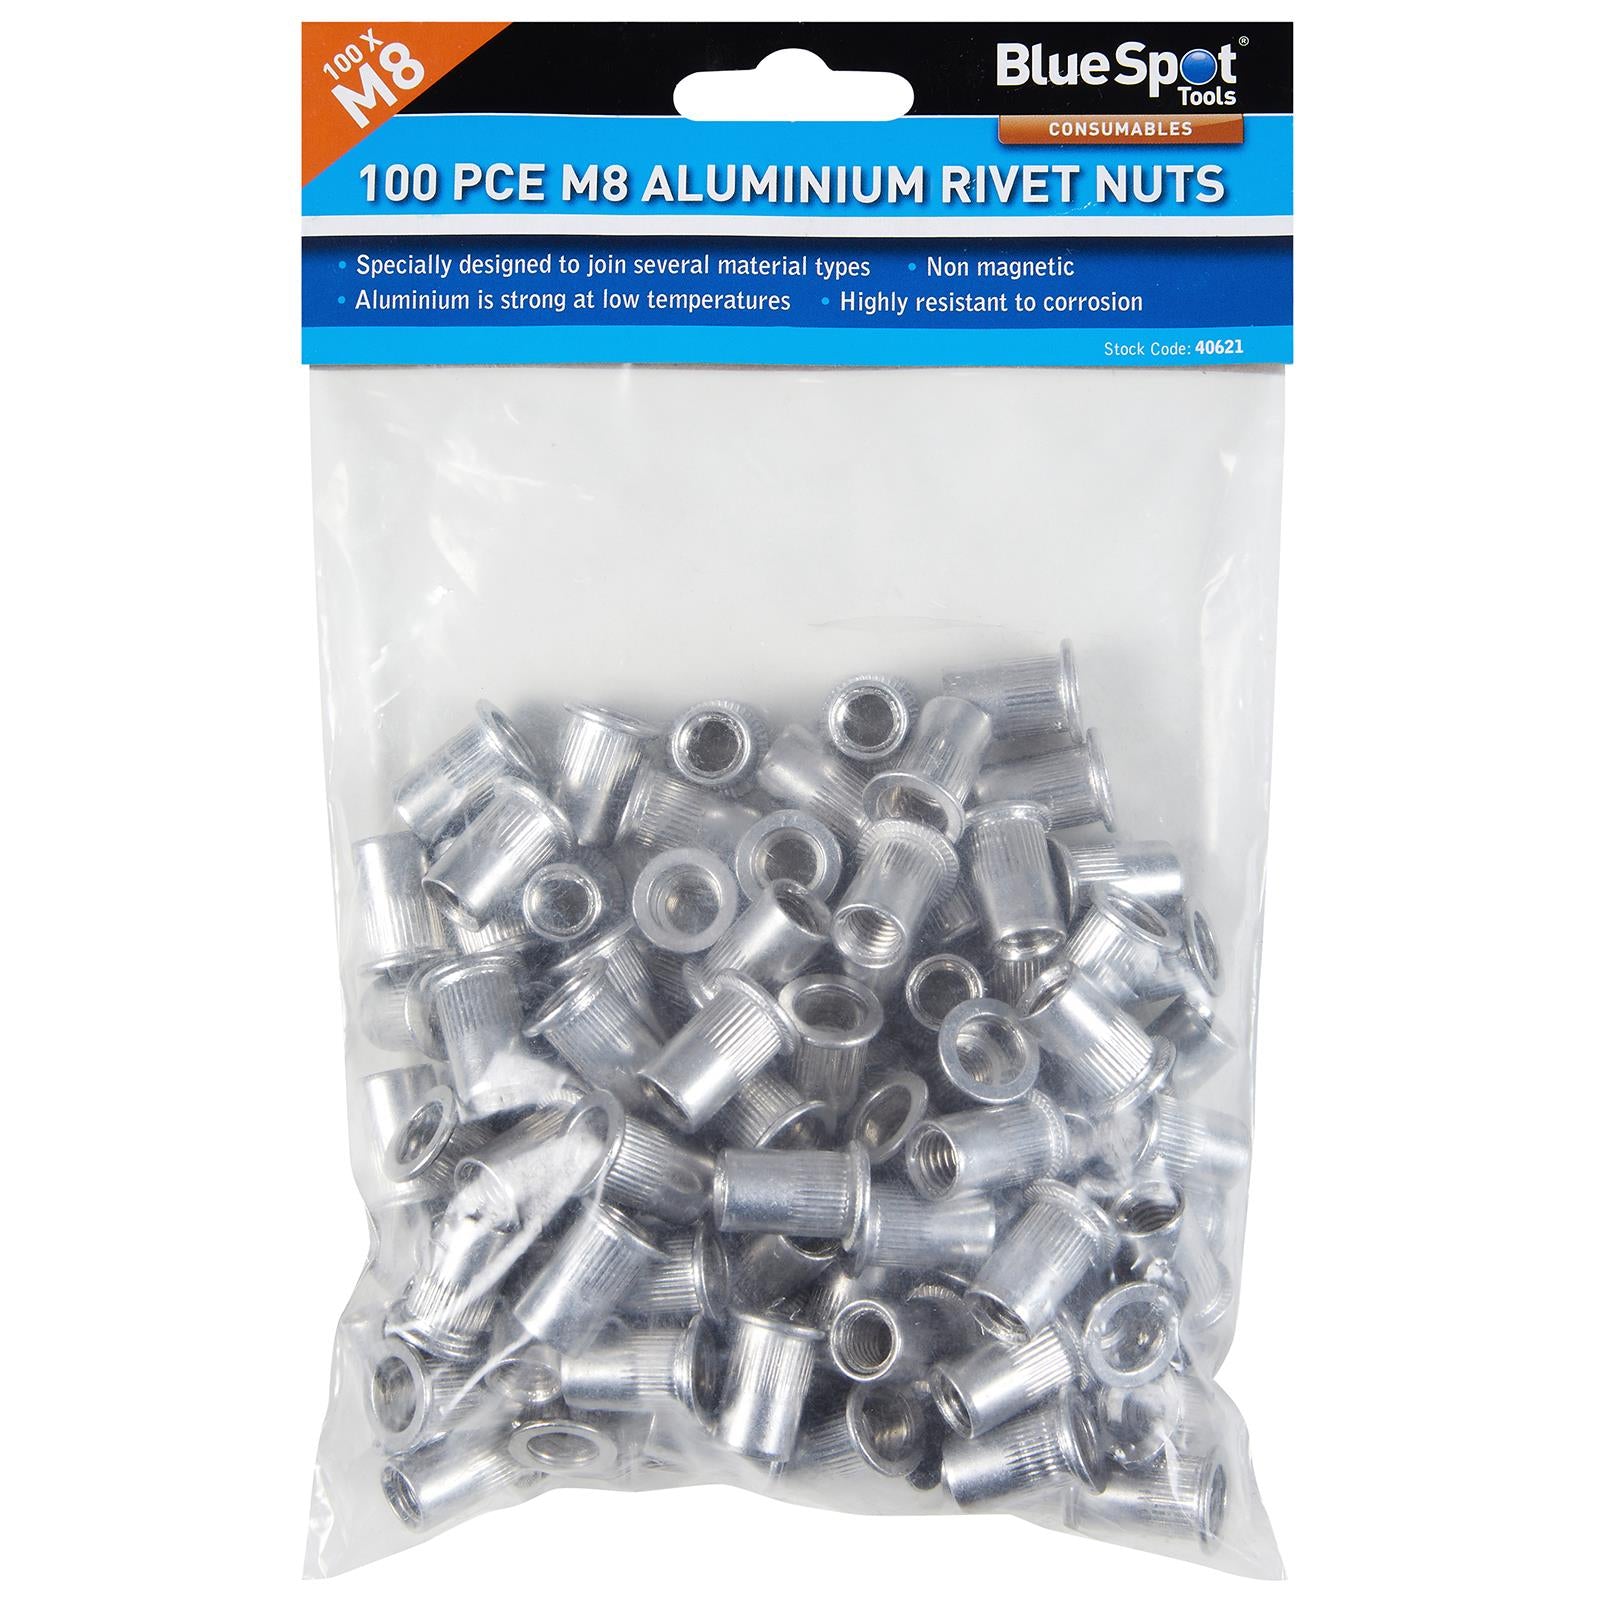 BlueSpot Aluminium Rivet Nuts M8 100 Piece Rivnuts